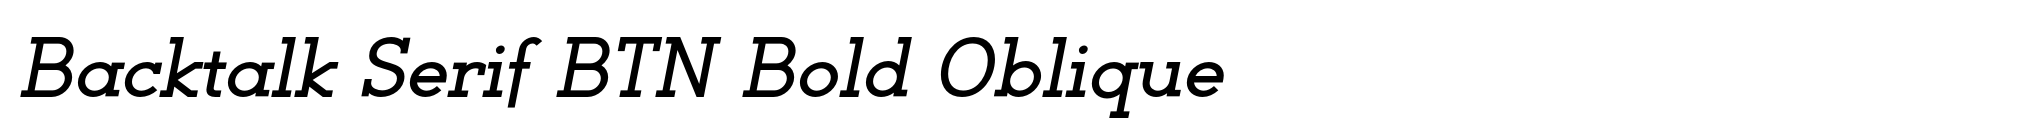 Backtalk Serif BTN Bold Oblique image